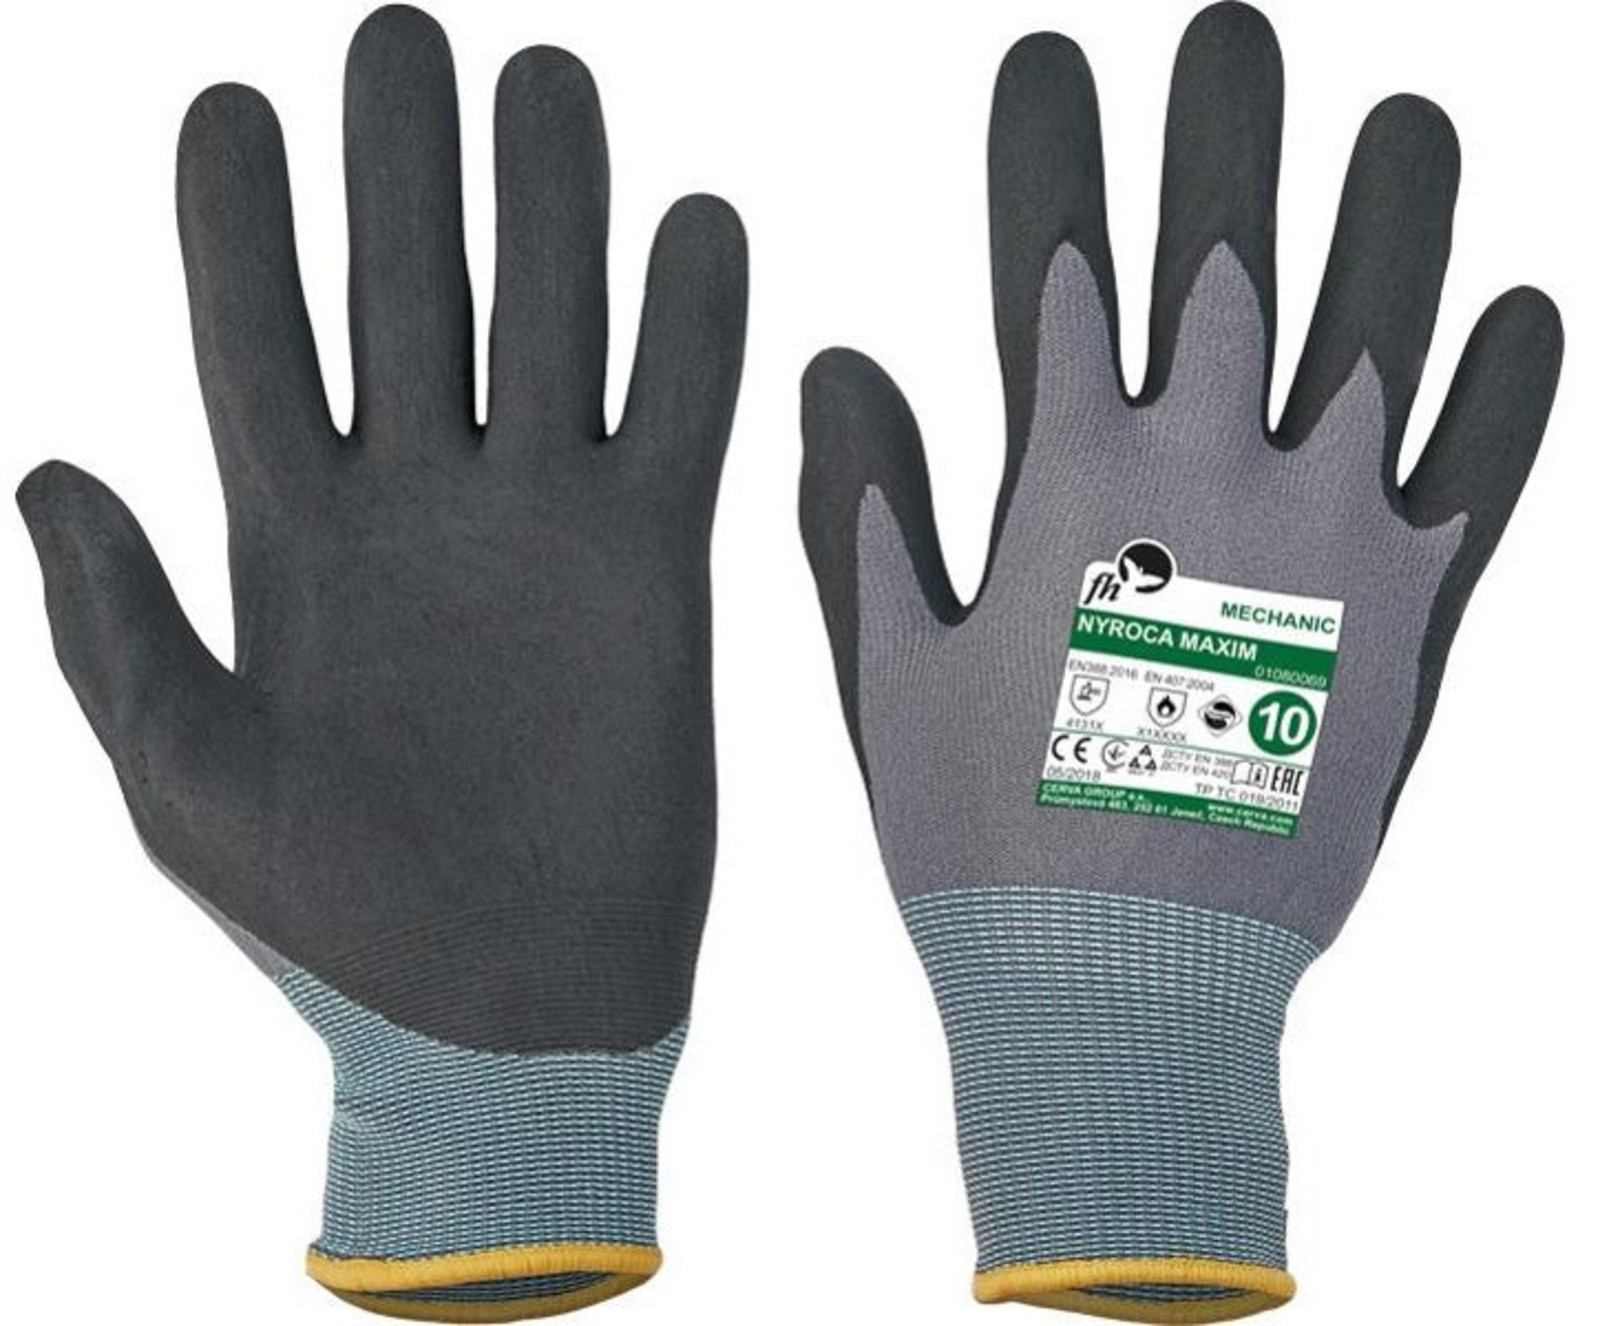 Pracovné rukavice Nyroca Maxim - veľkosť: 7/S